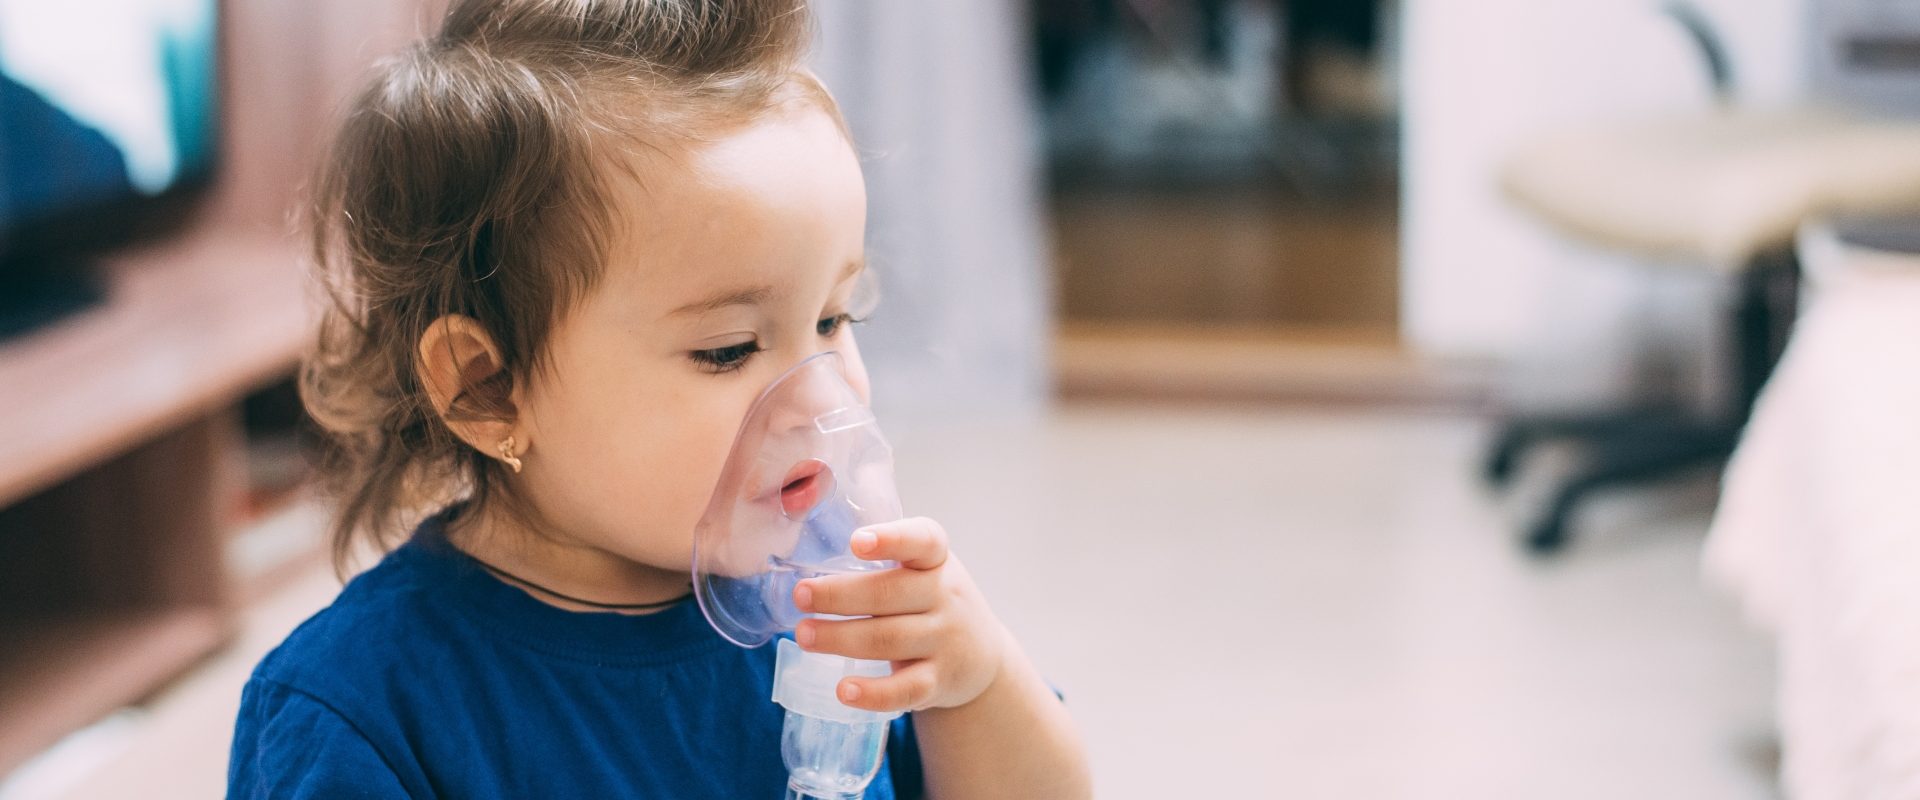 Nebulizacja i inhalacja dla dzieci - mała dziewczynka inhaluje się przy pomocy nebulizatora.